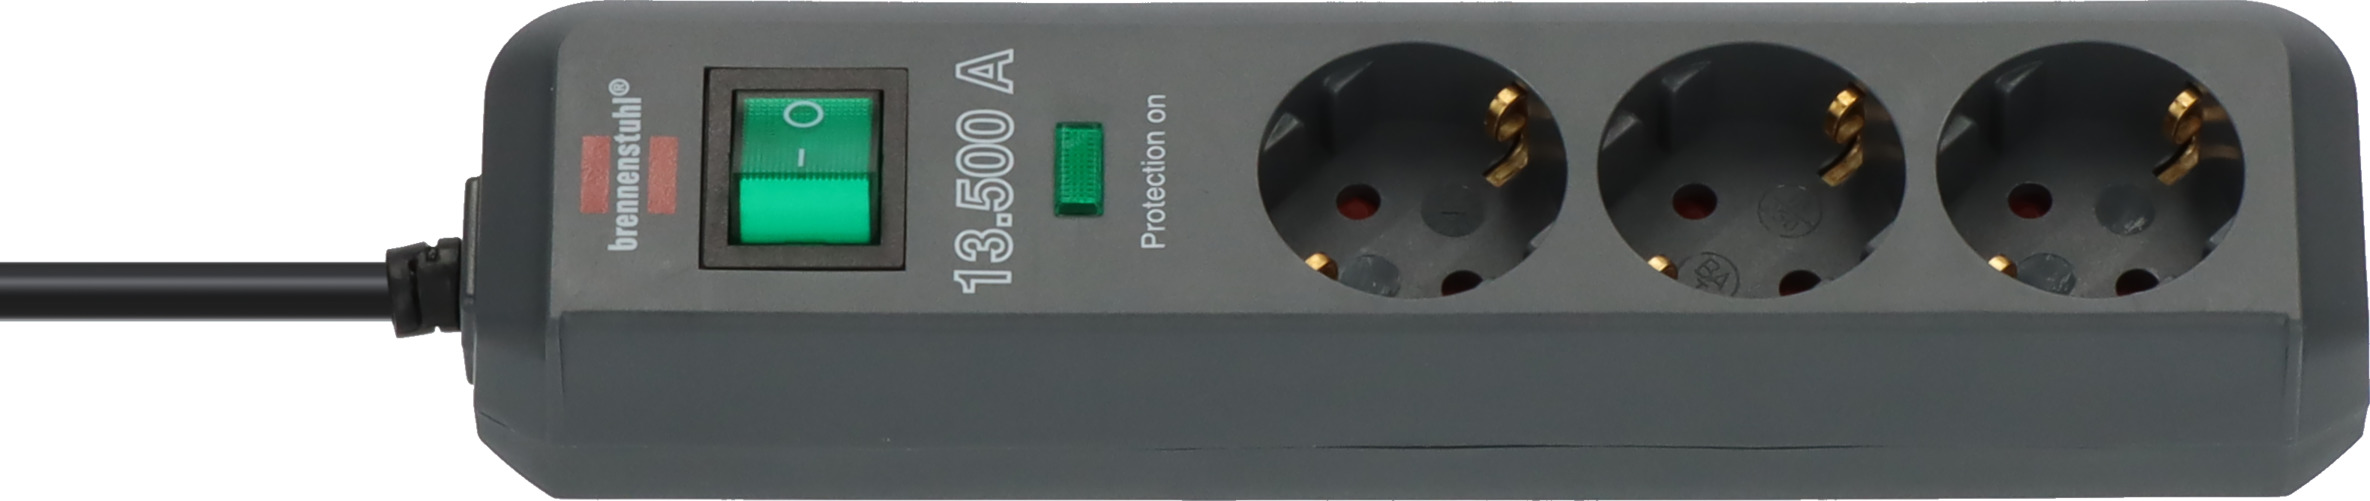 Regleta de 5 enchufes con interruptor de conexión/desconexión, Accesorios